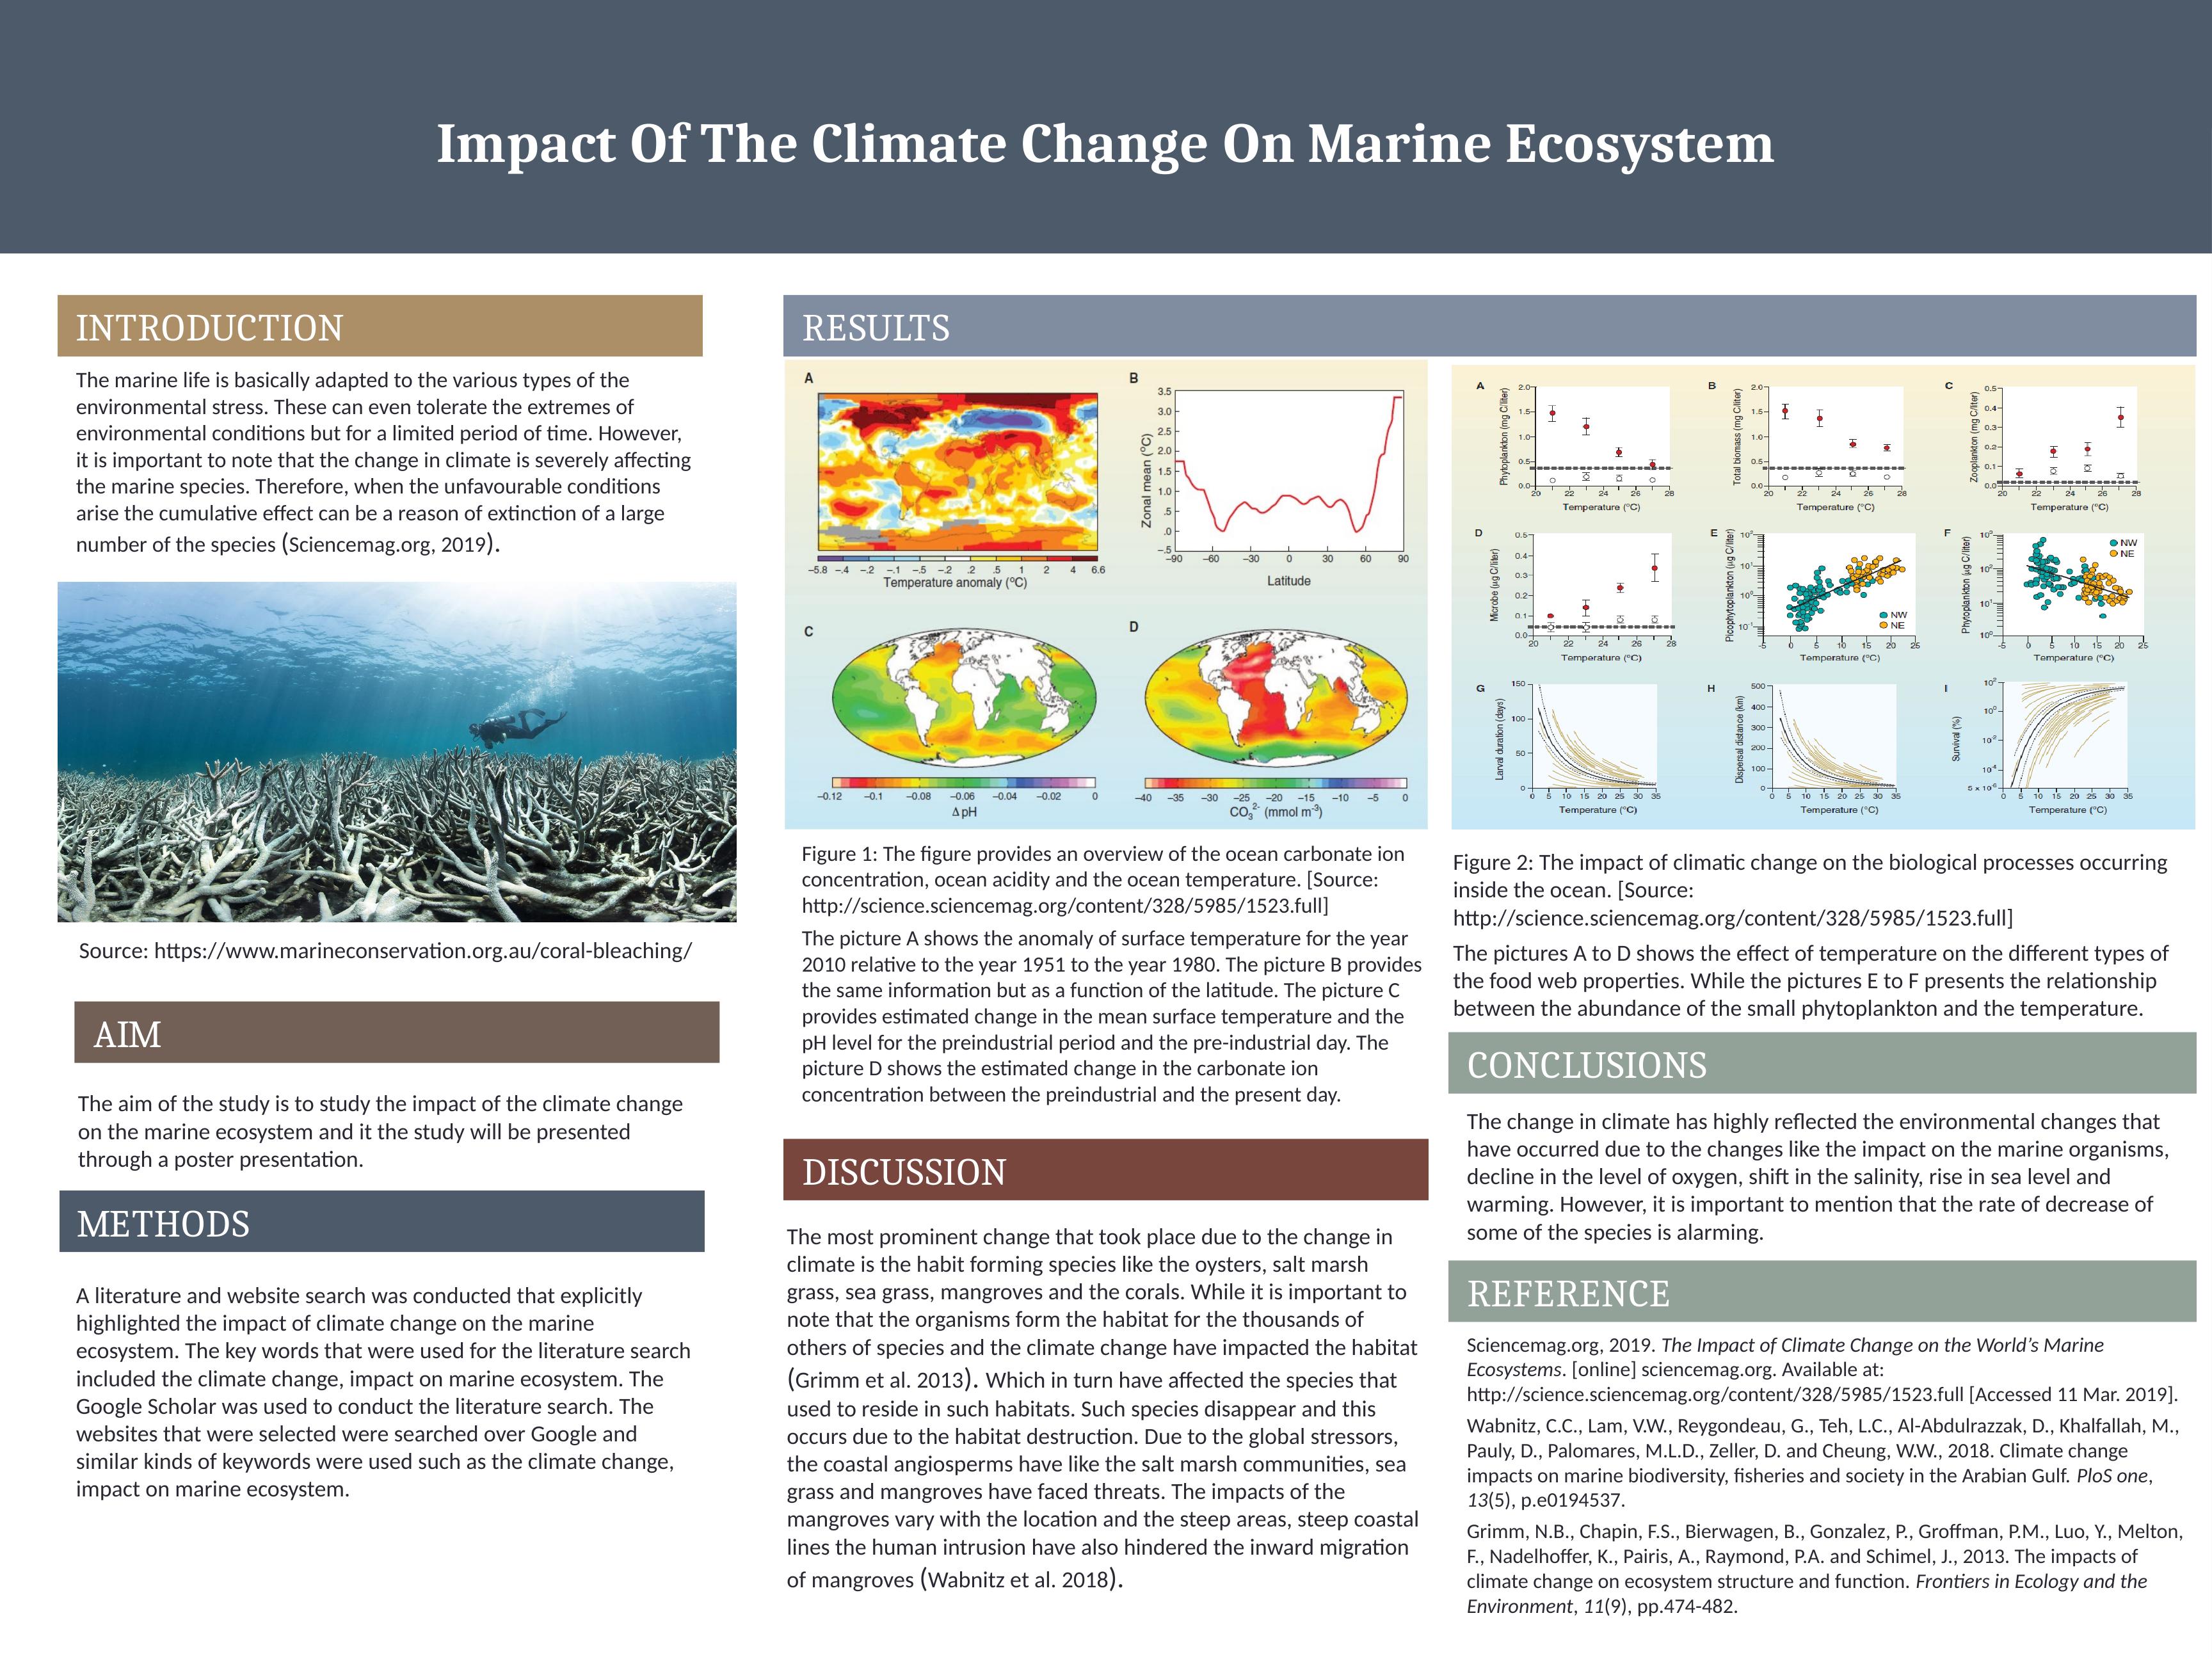 Impact of Climate Change on Marine Ecosystem - Desklib_1